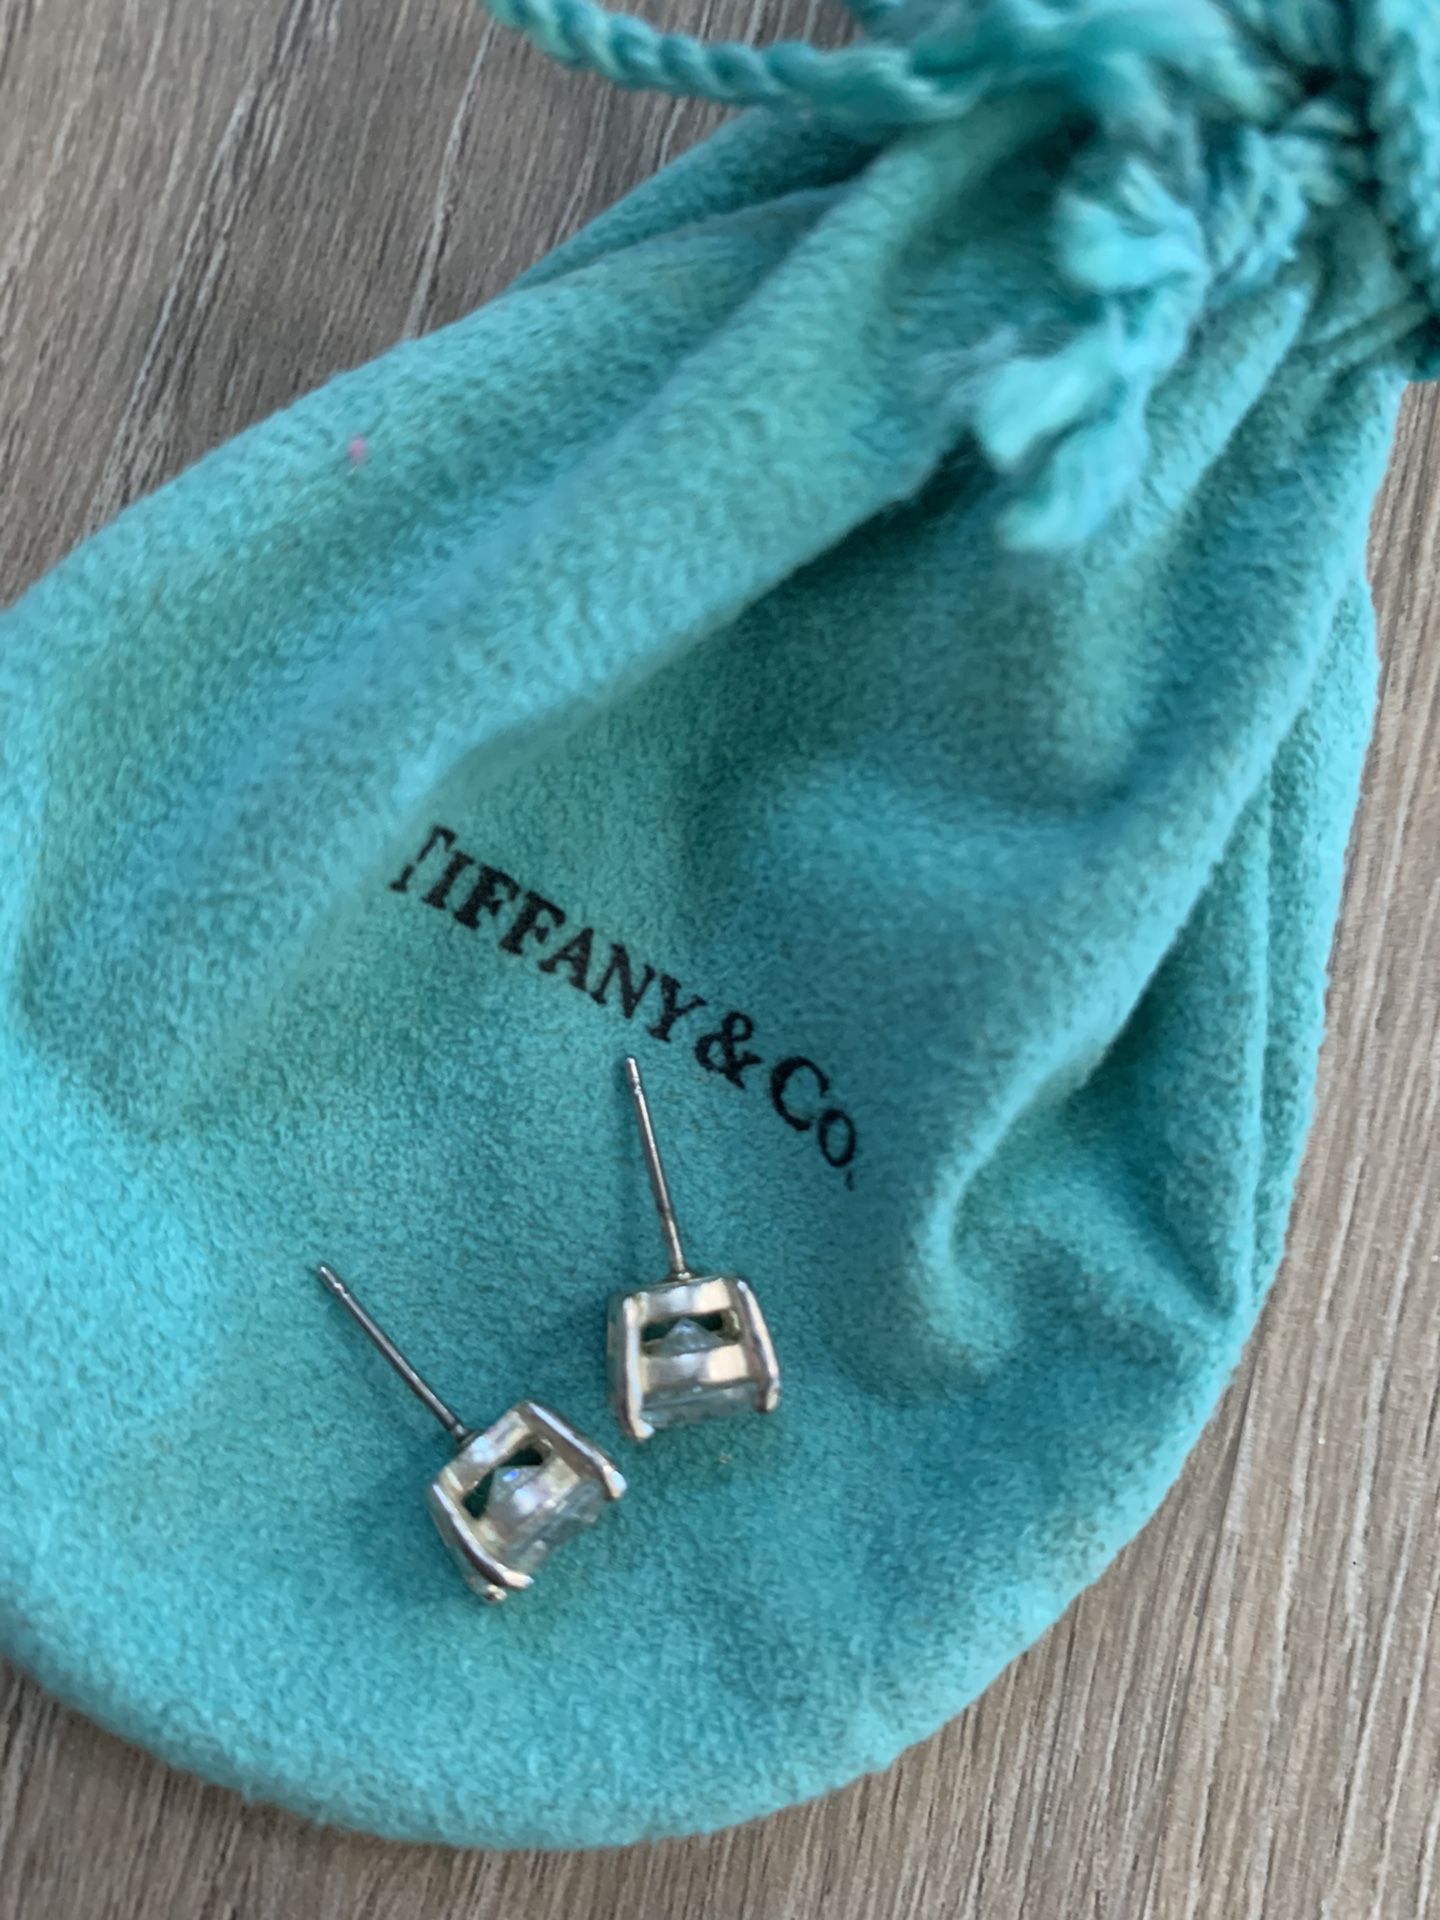 kle Faux Earrings w/Tiffany bag without backs to earrings. Earrings are NOT Tiffany!